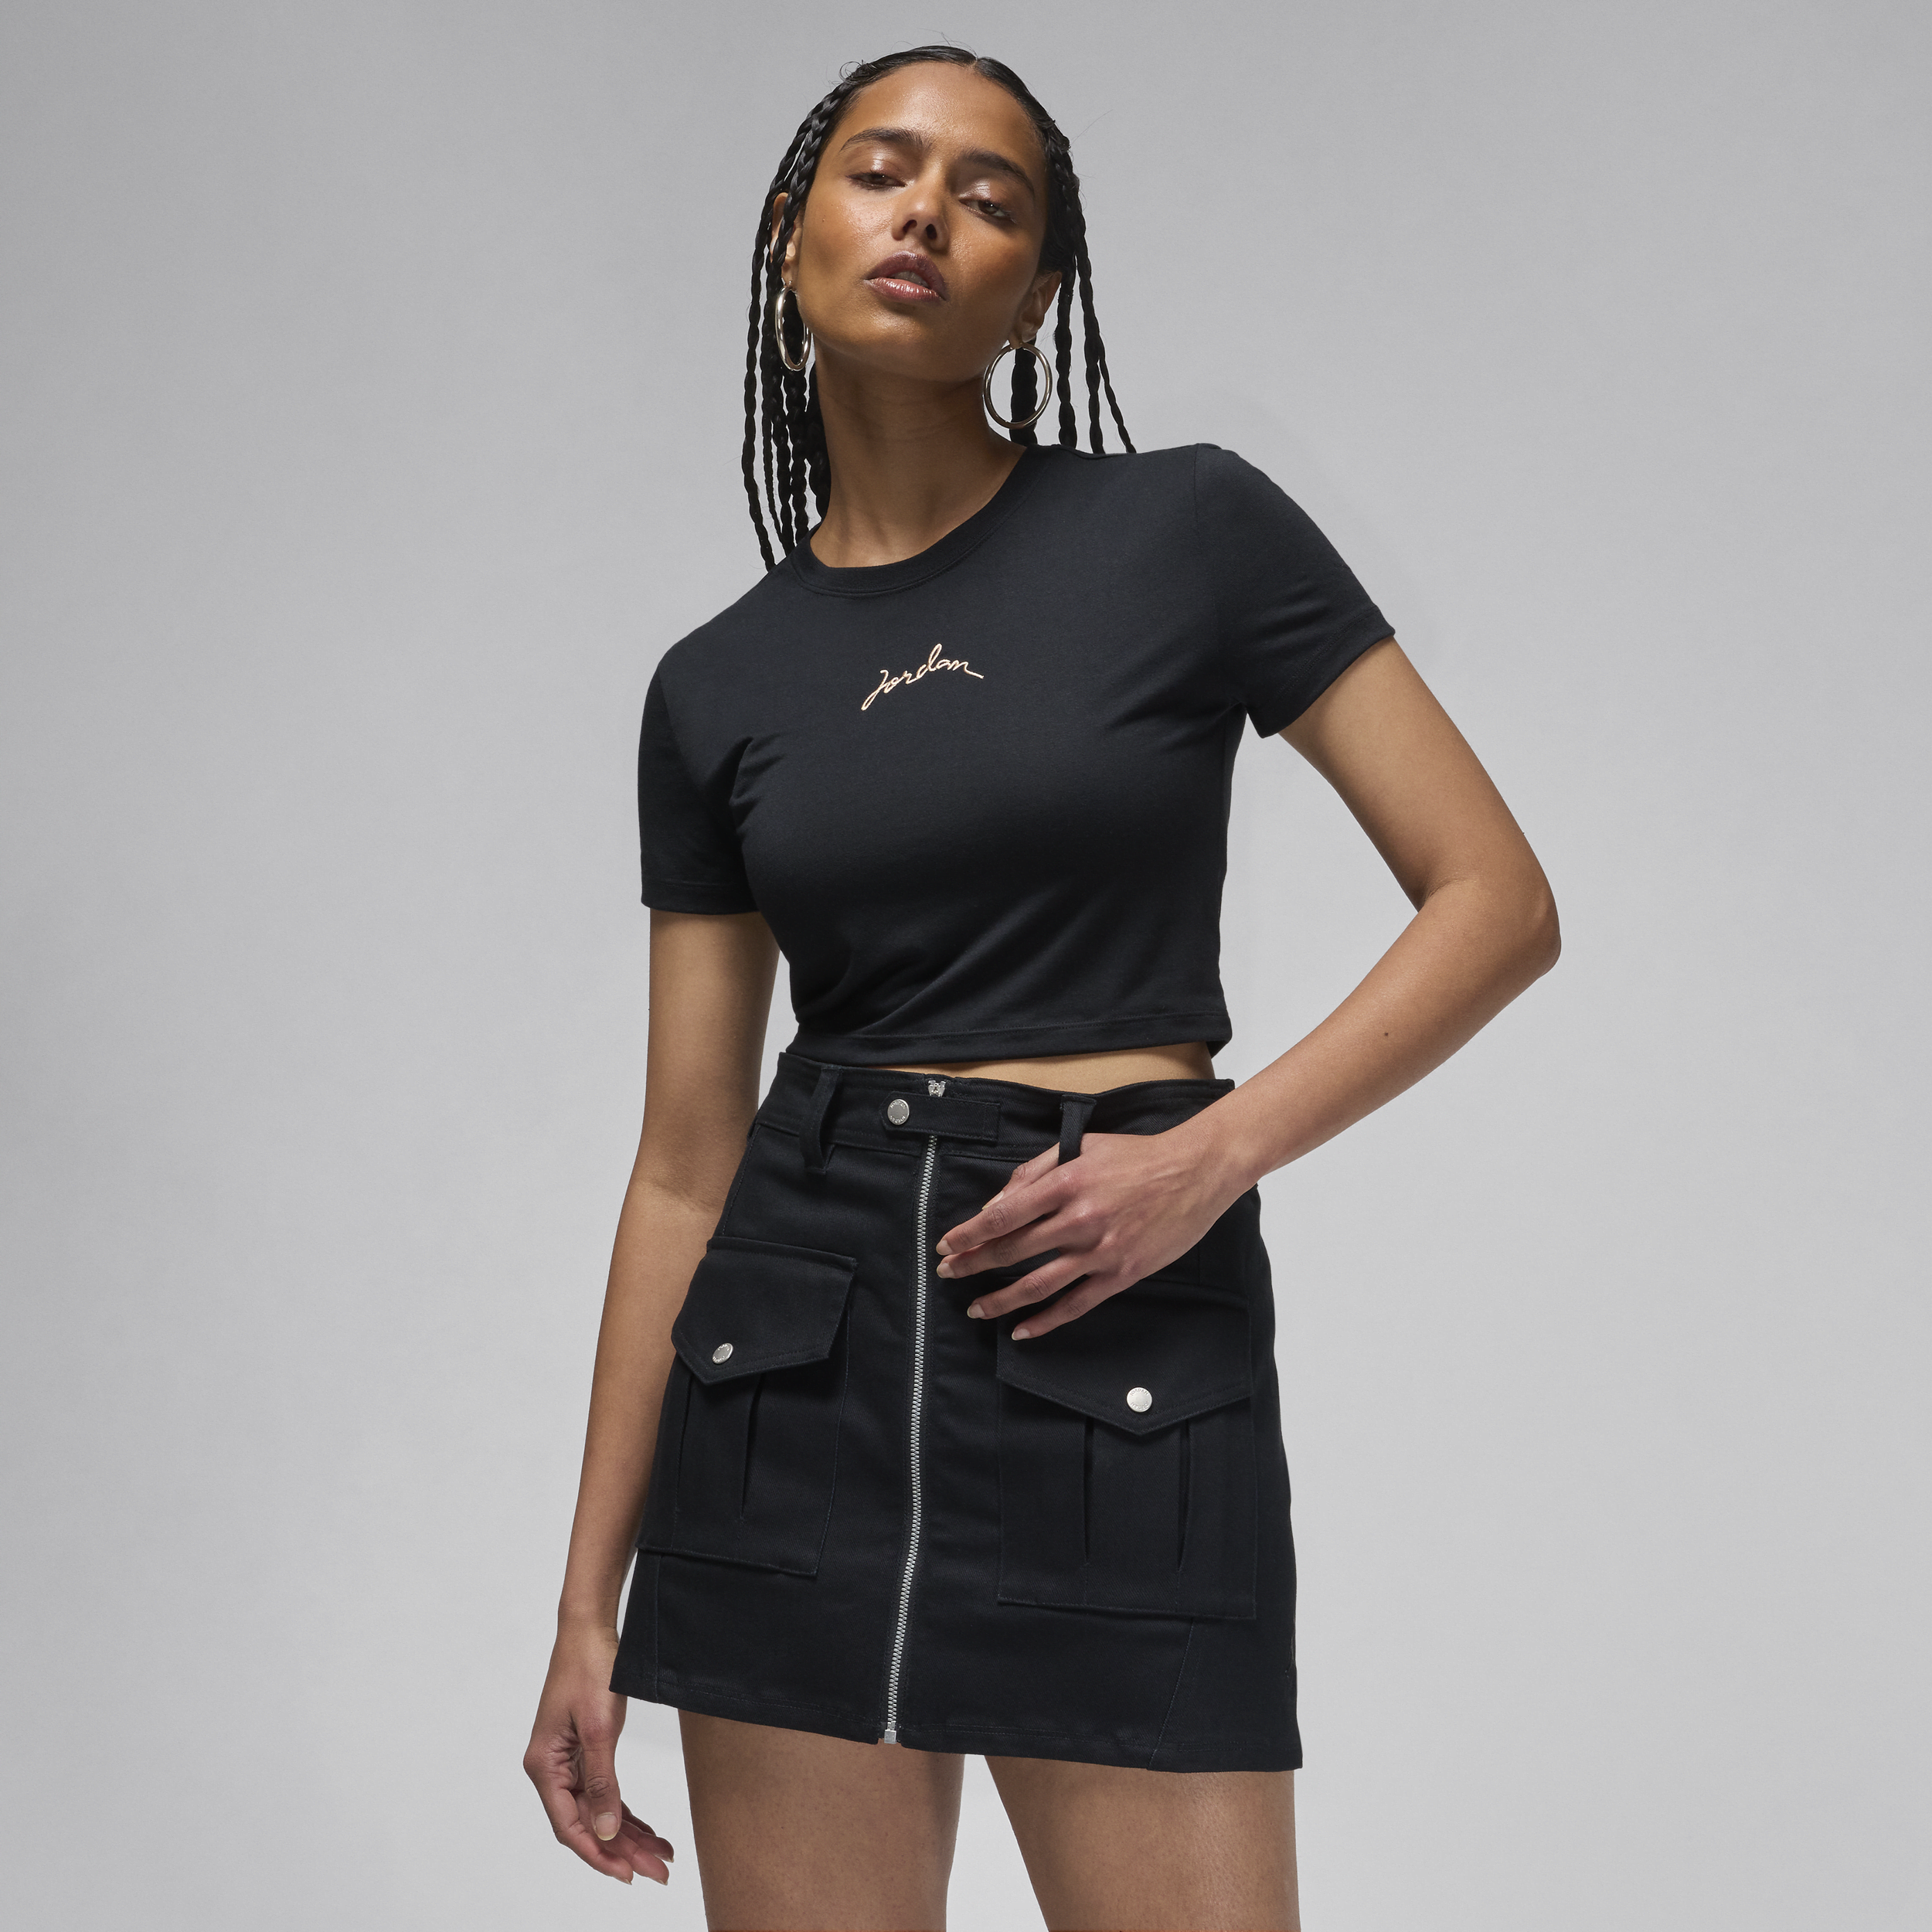 Jordan Camiseta corta entallada - Mujer - Negro